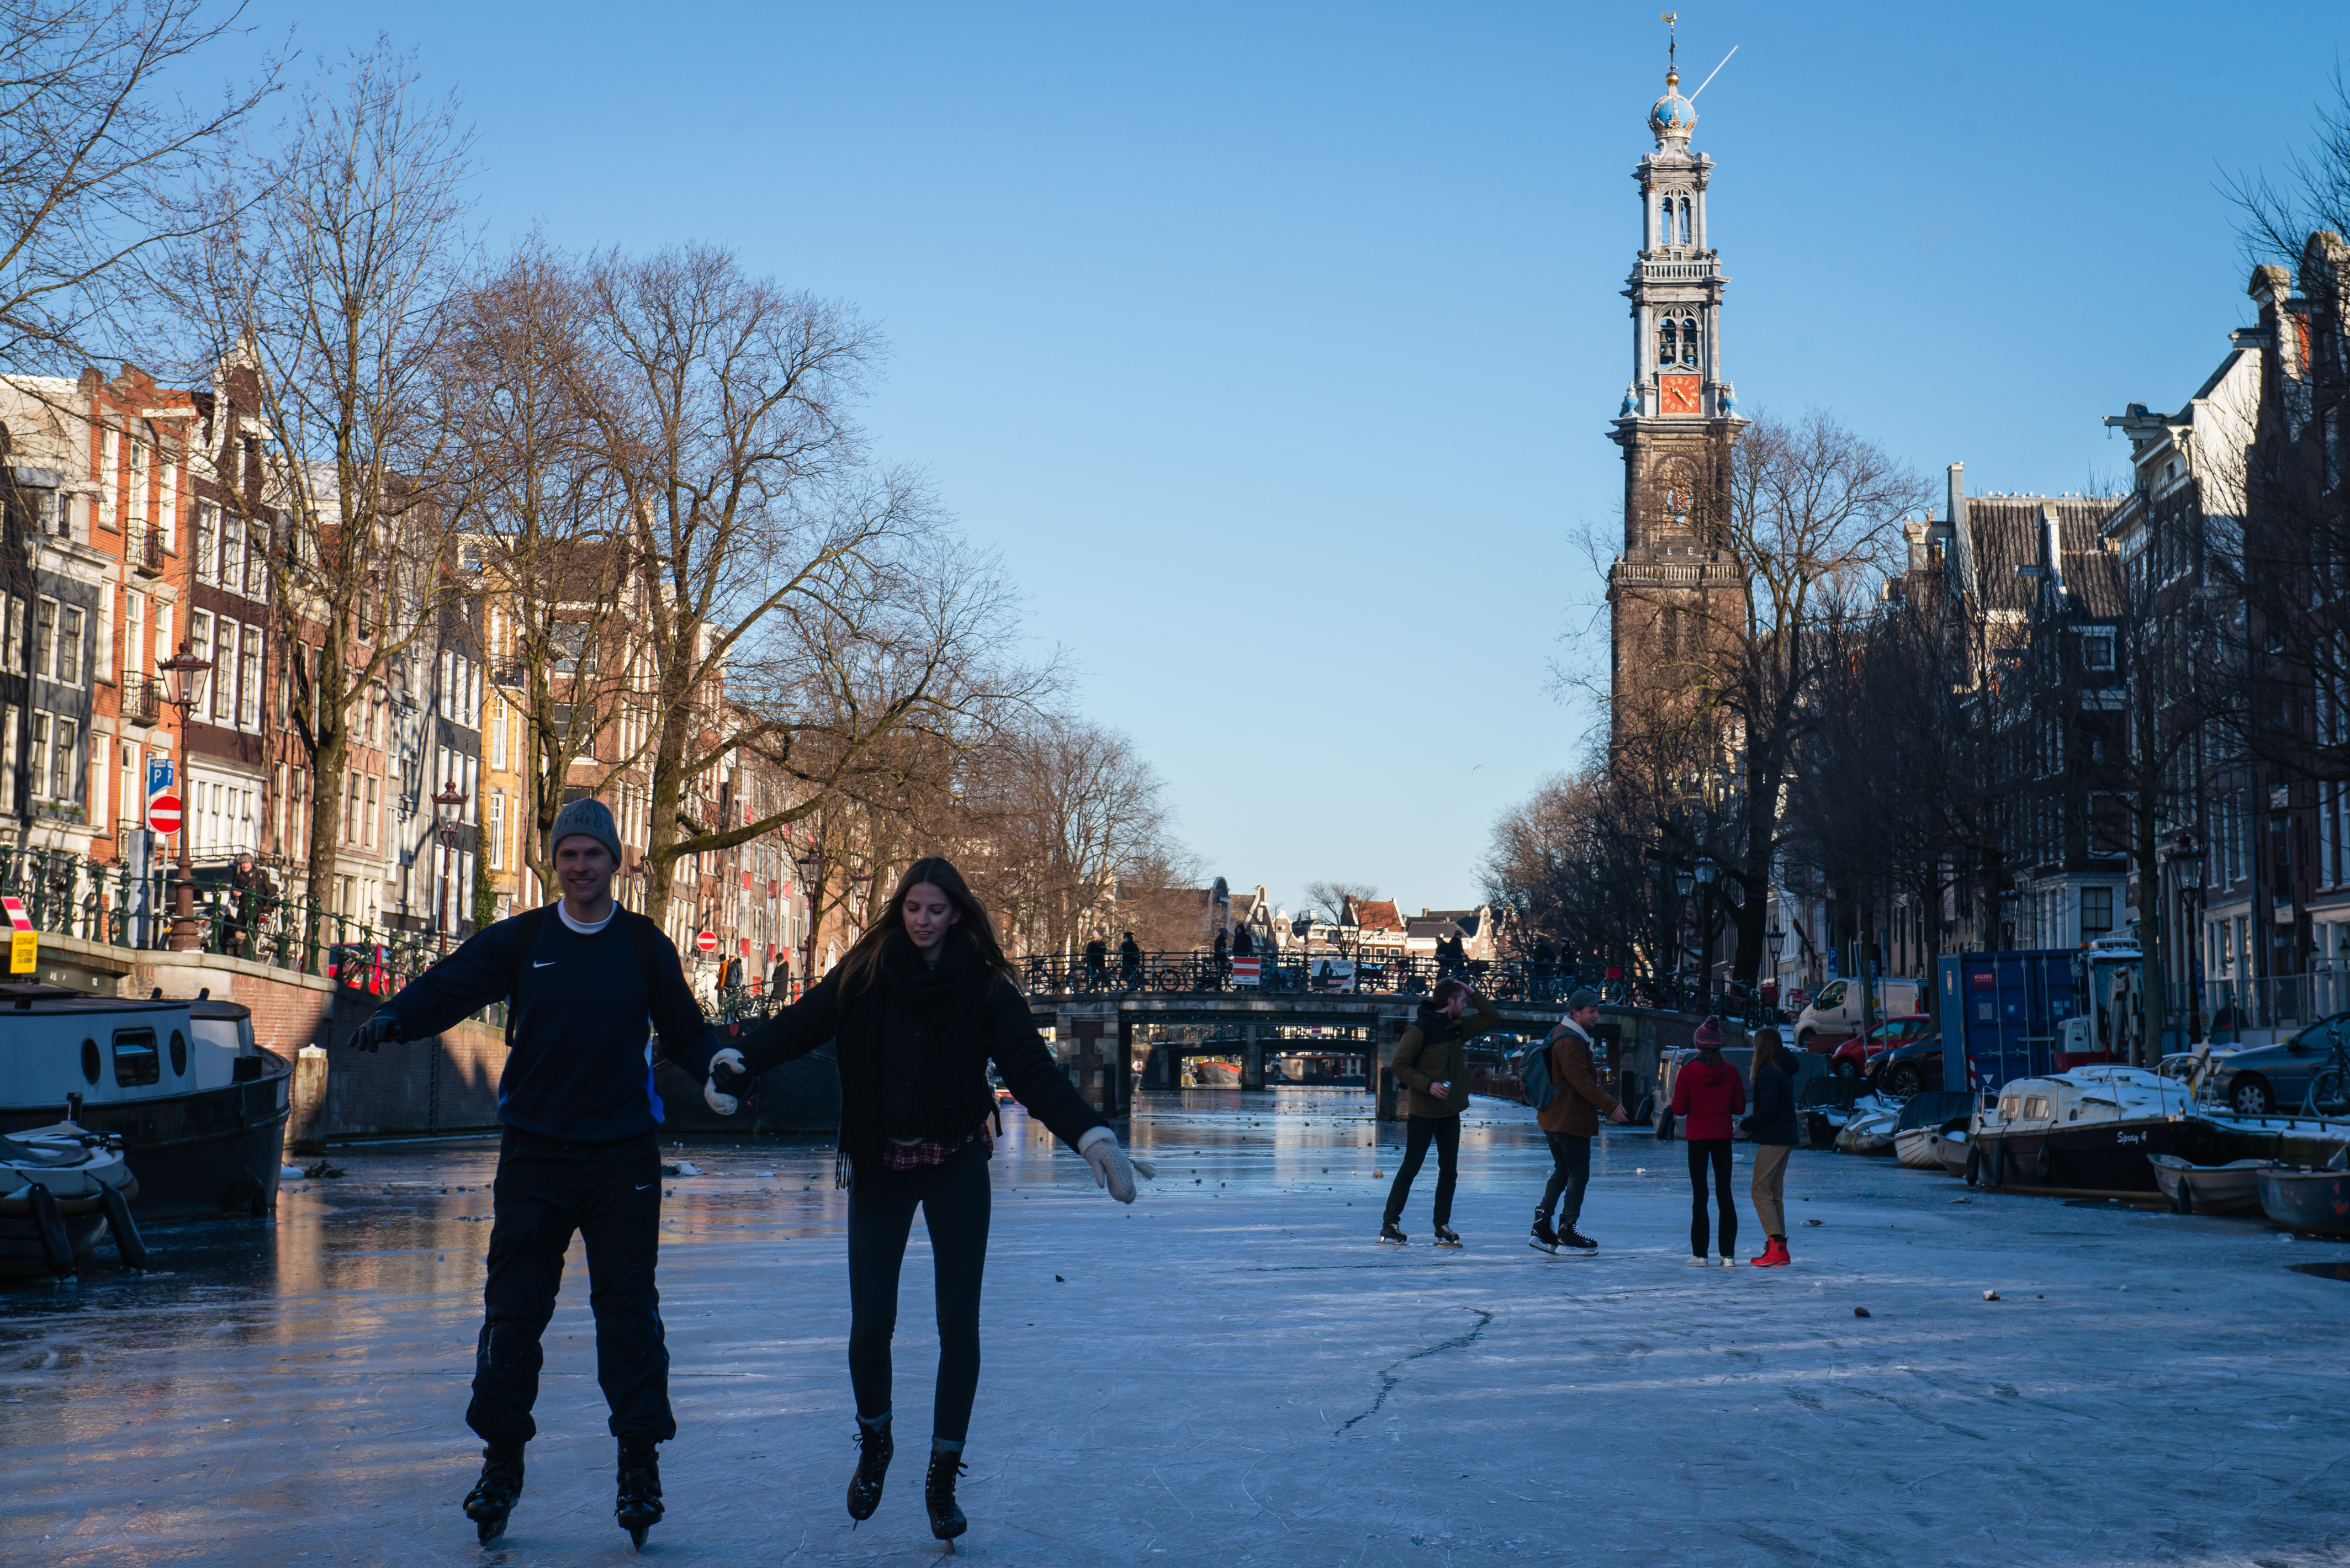 Befagytak a csatornák, korcsolyázhatóvá vált Amszterdam